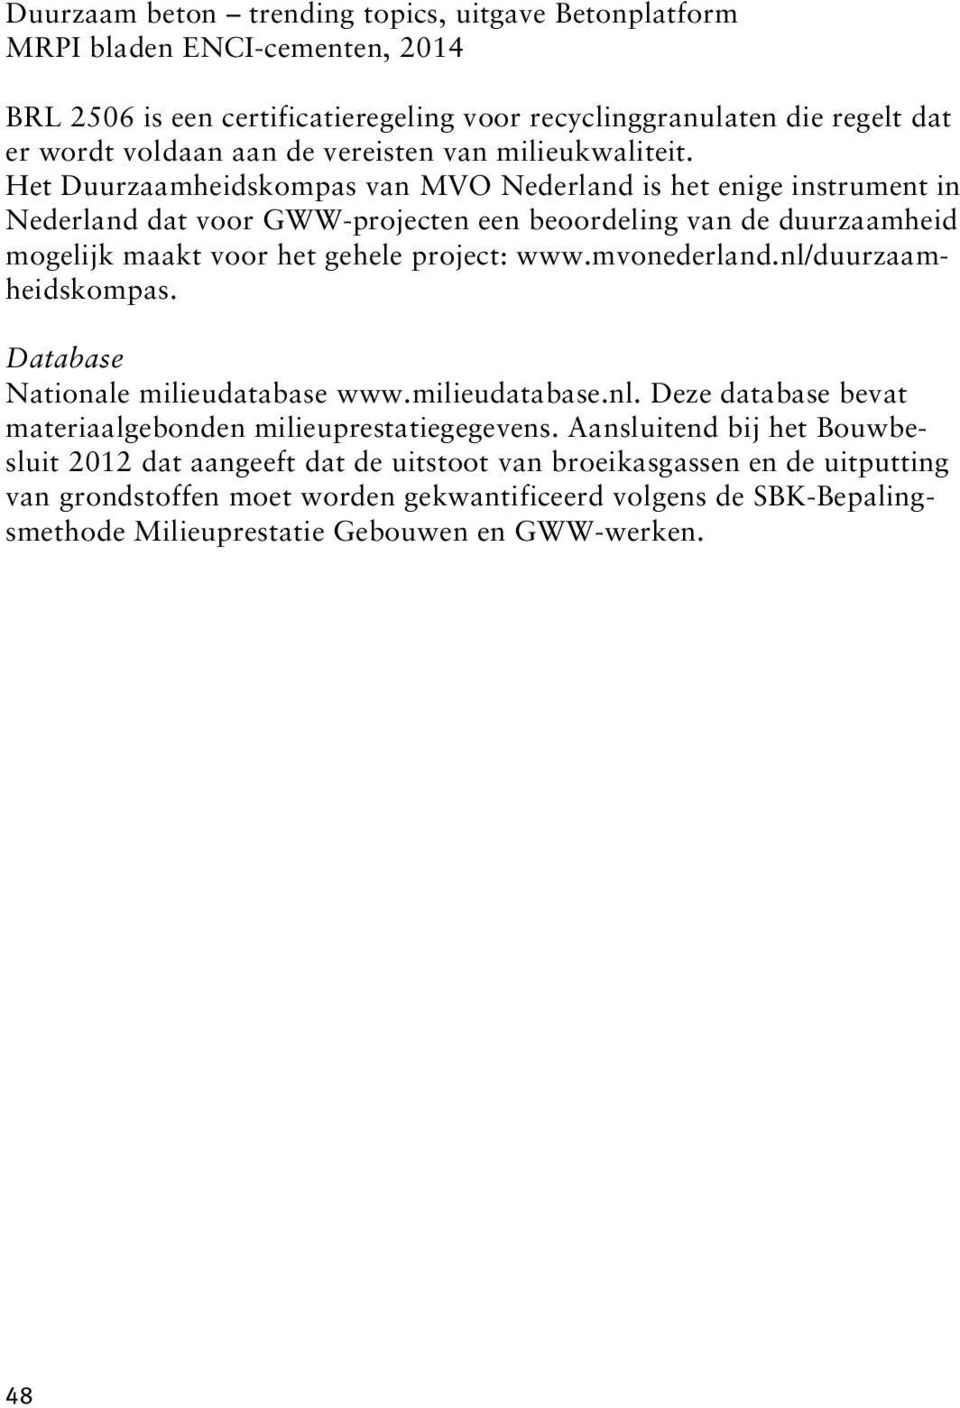 Het Duurzaamheidskompas van MVO Nederland is het enige instrument in Nederland dat voor GWW-projecten een beoordeling van de duurzaamheid mogelijk maakt voor het gehele project: www.mvonederland.